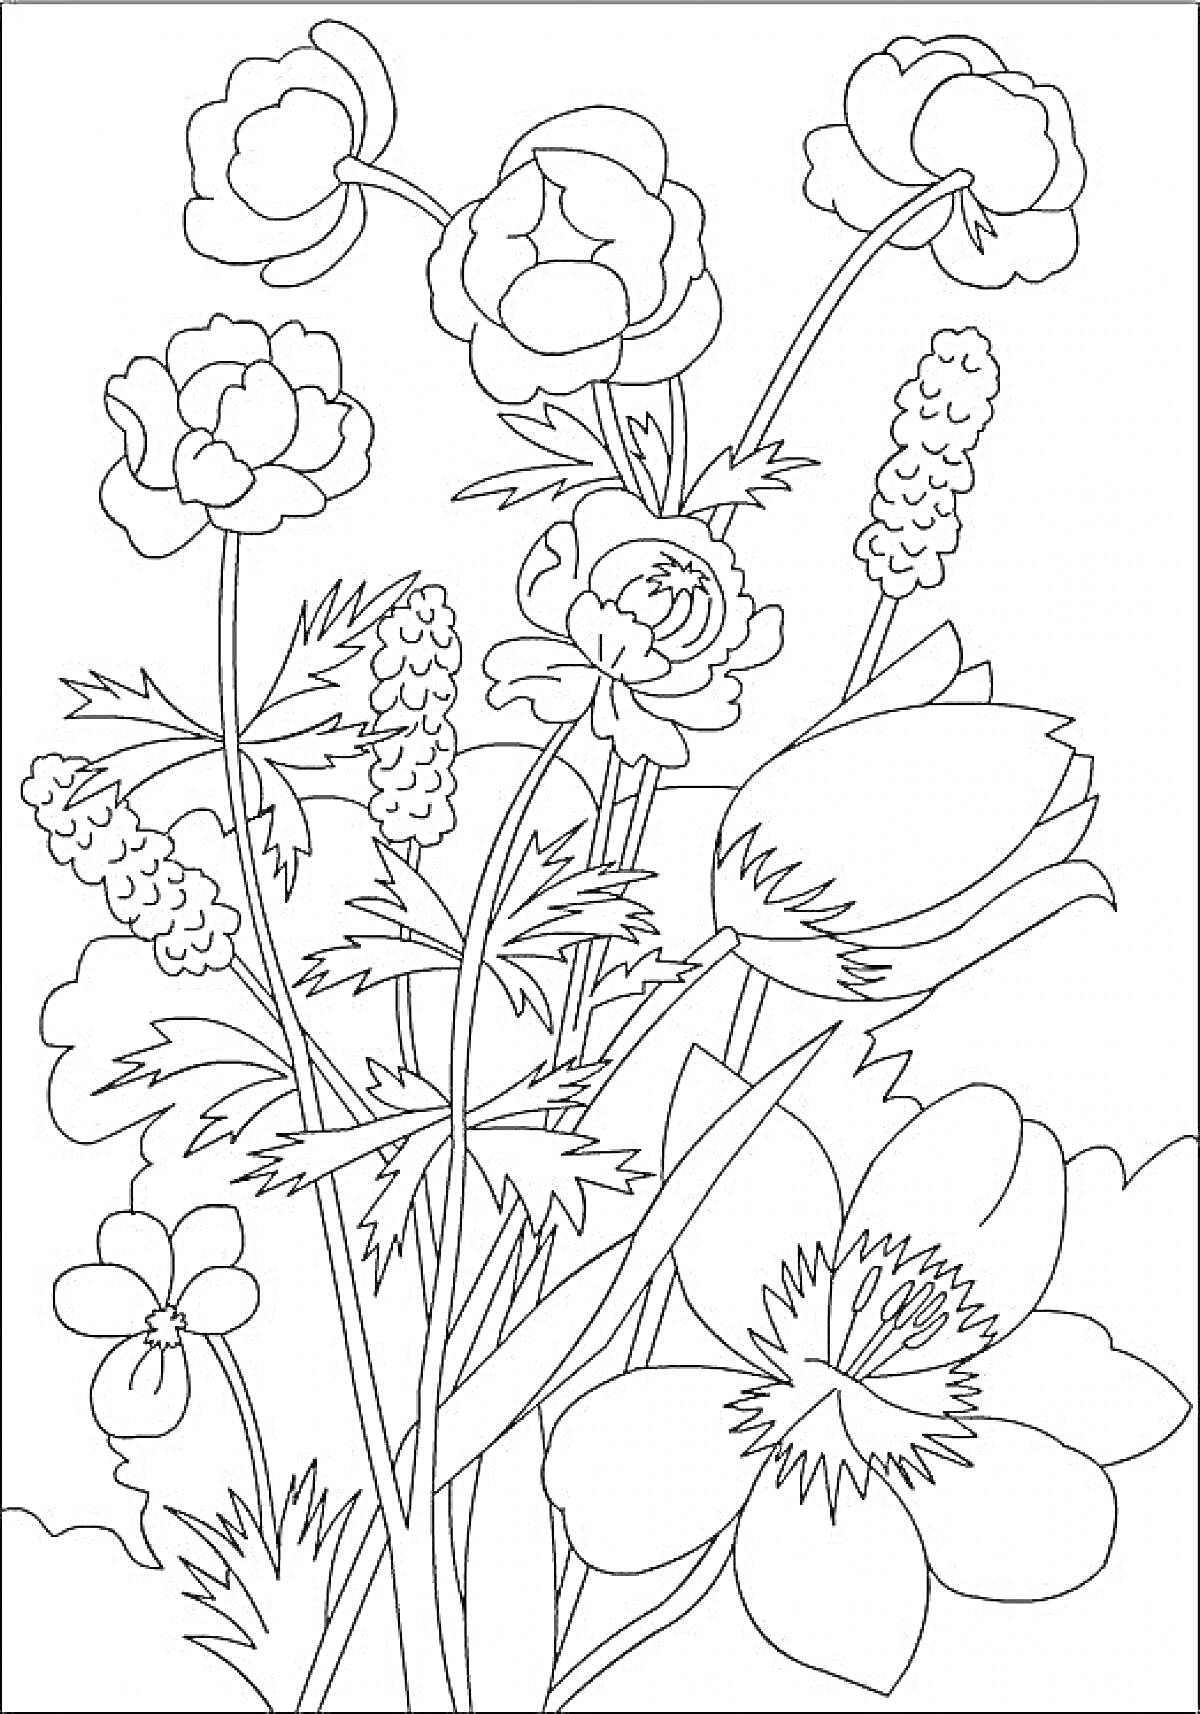 Раскраска Цветы и бутоны различных видов на стеблях с листьями, включая большие и маленькие цветы